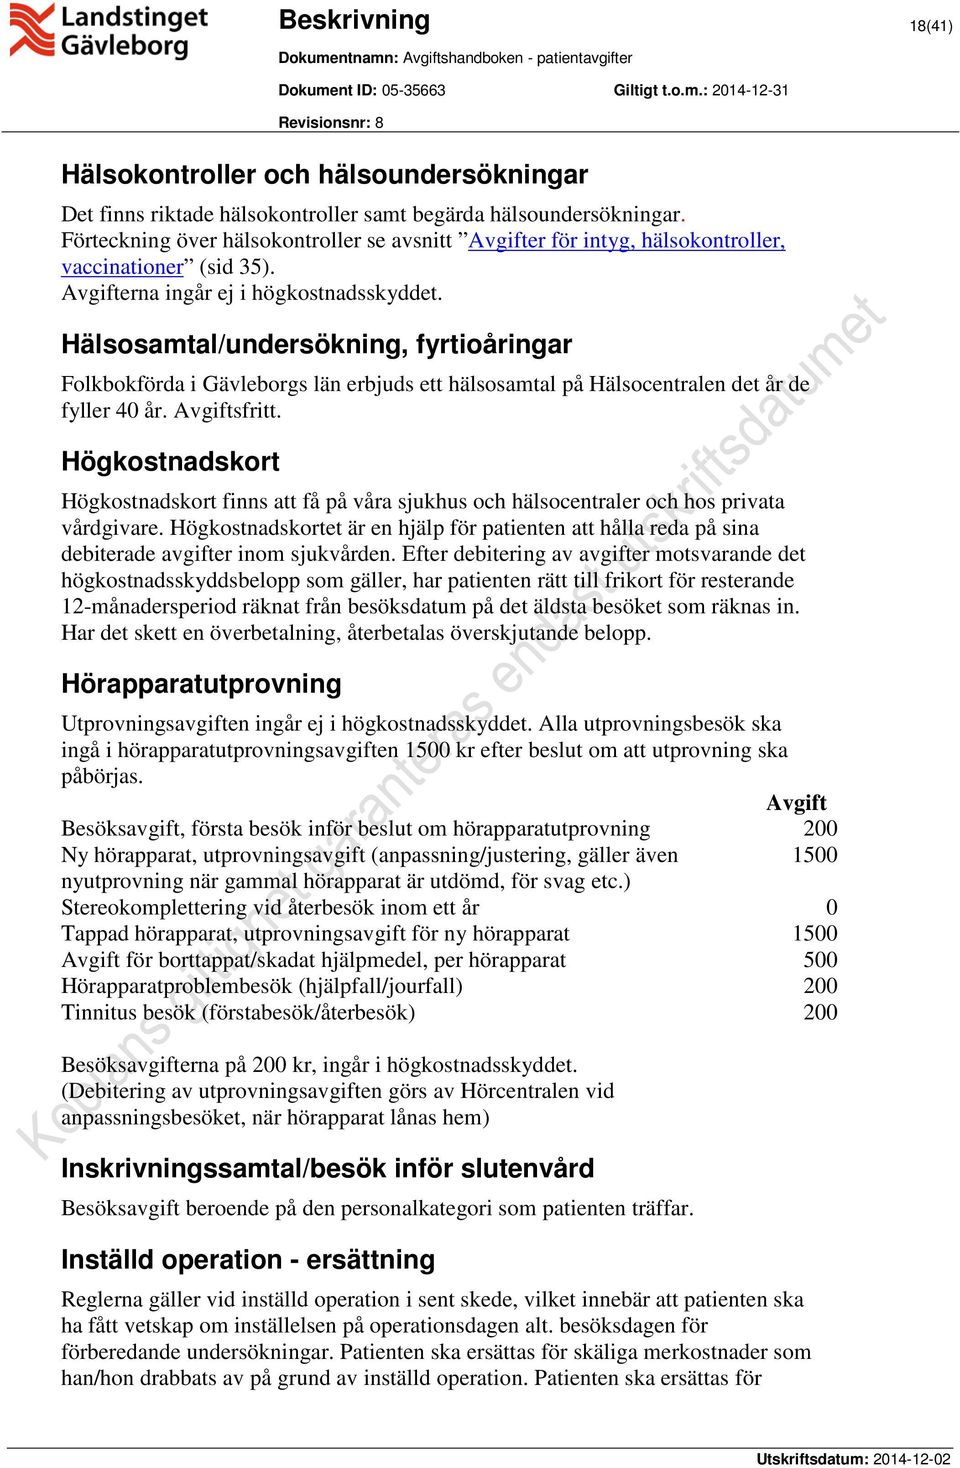 Hälsosamtal/undersökning, fyrtioåringar Folkbokförda i Gävleborgs län erbjuds ett hälsosamtal på Hälsocentralen det år de fyller 40 år. Avgiftsfritt.